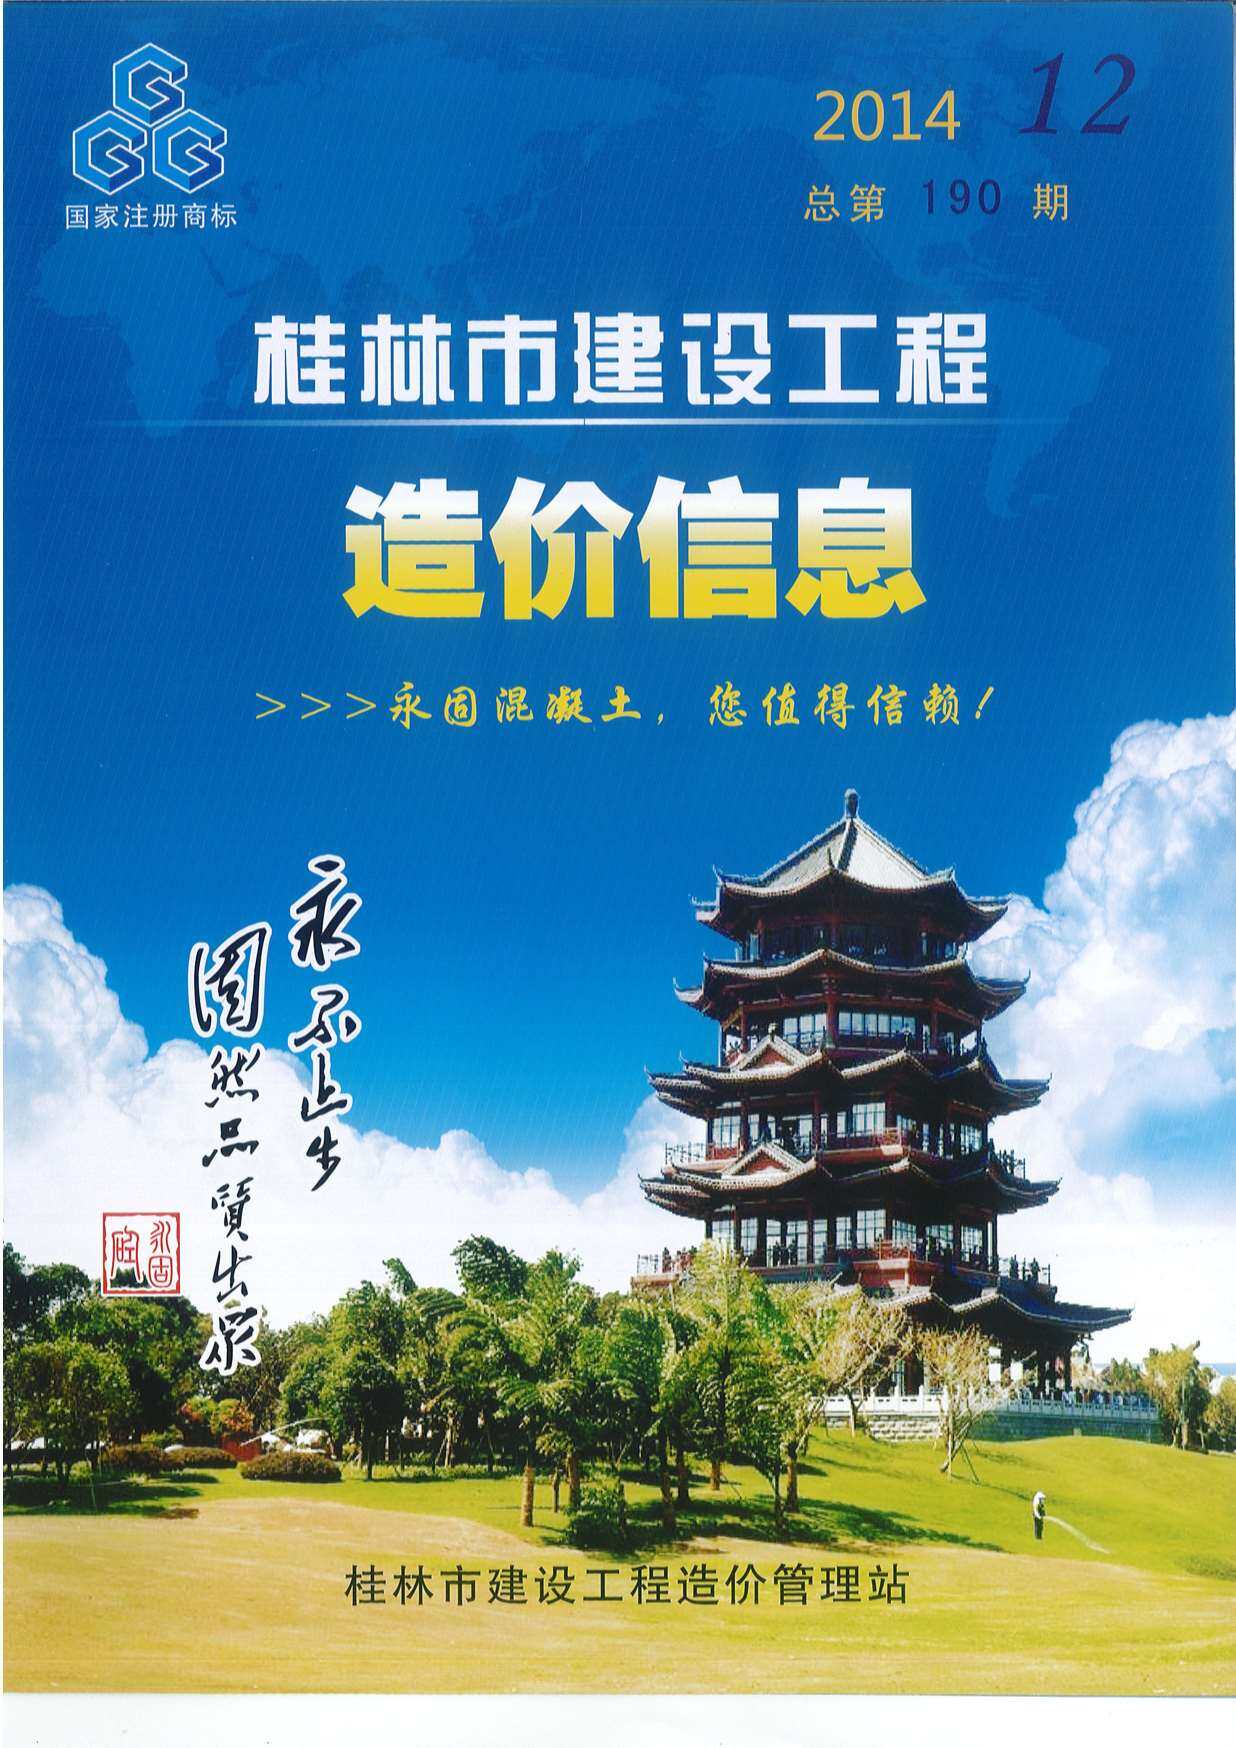 桂林市2014年12月工程造价信息期刊